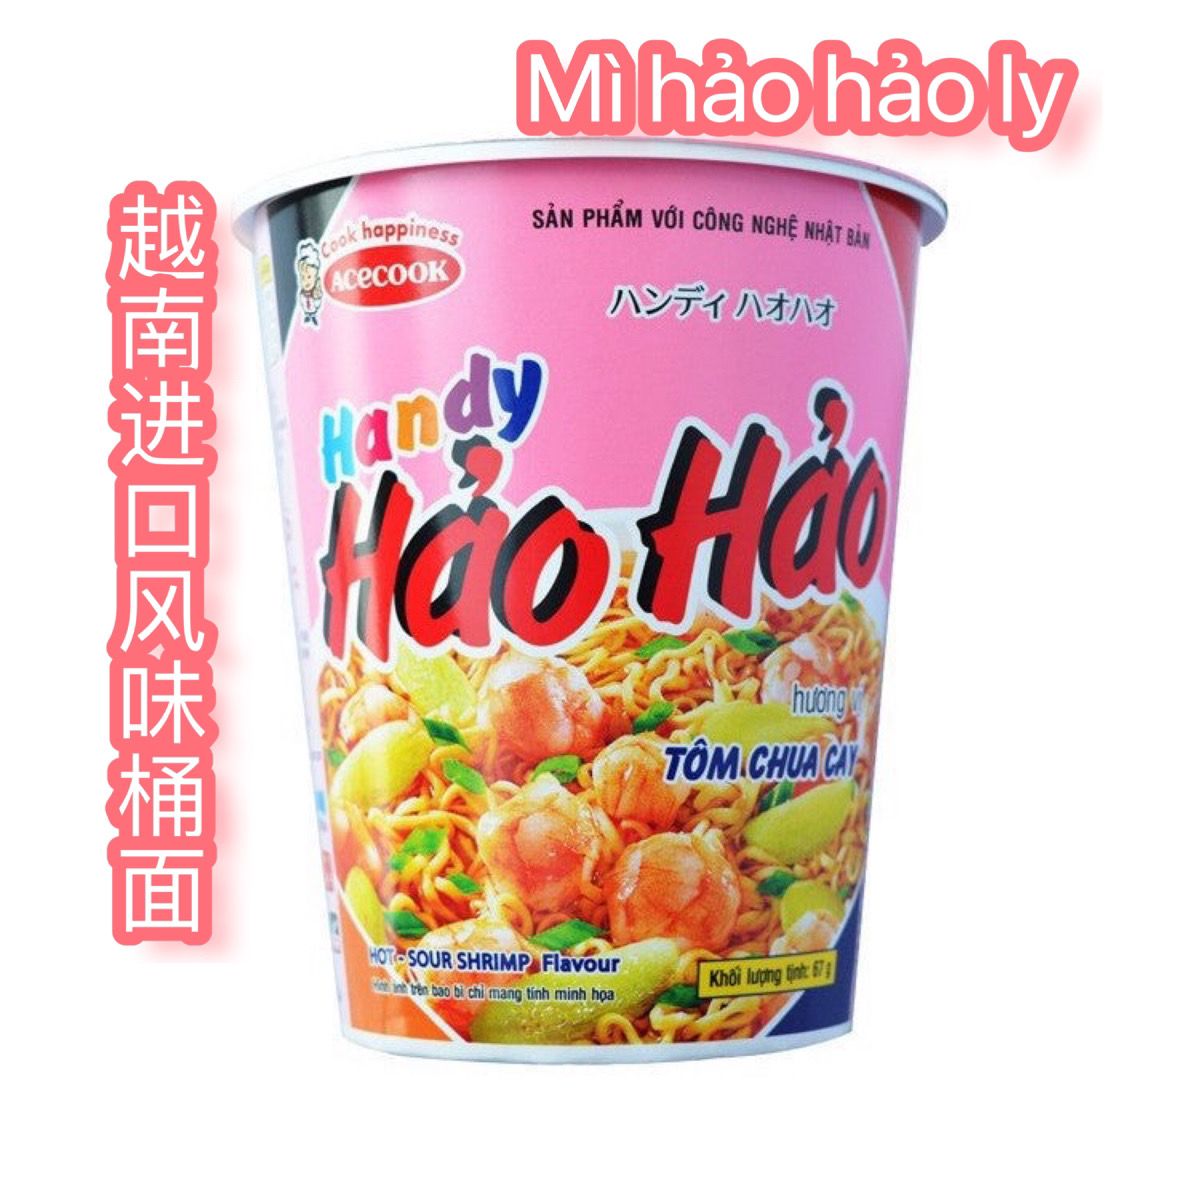 越南风味好好面 mi haohao ly杯装桶装泡面干脆速食方便早餐面67g